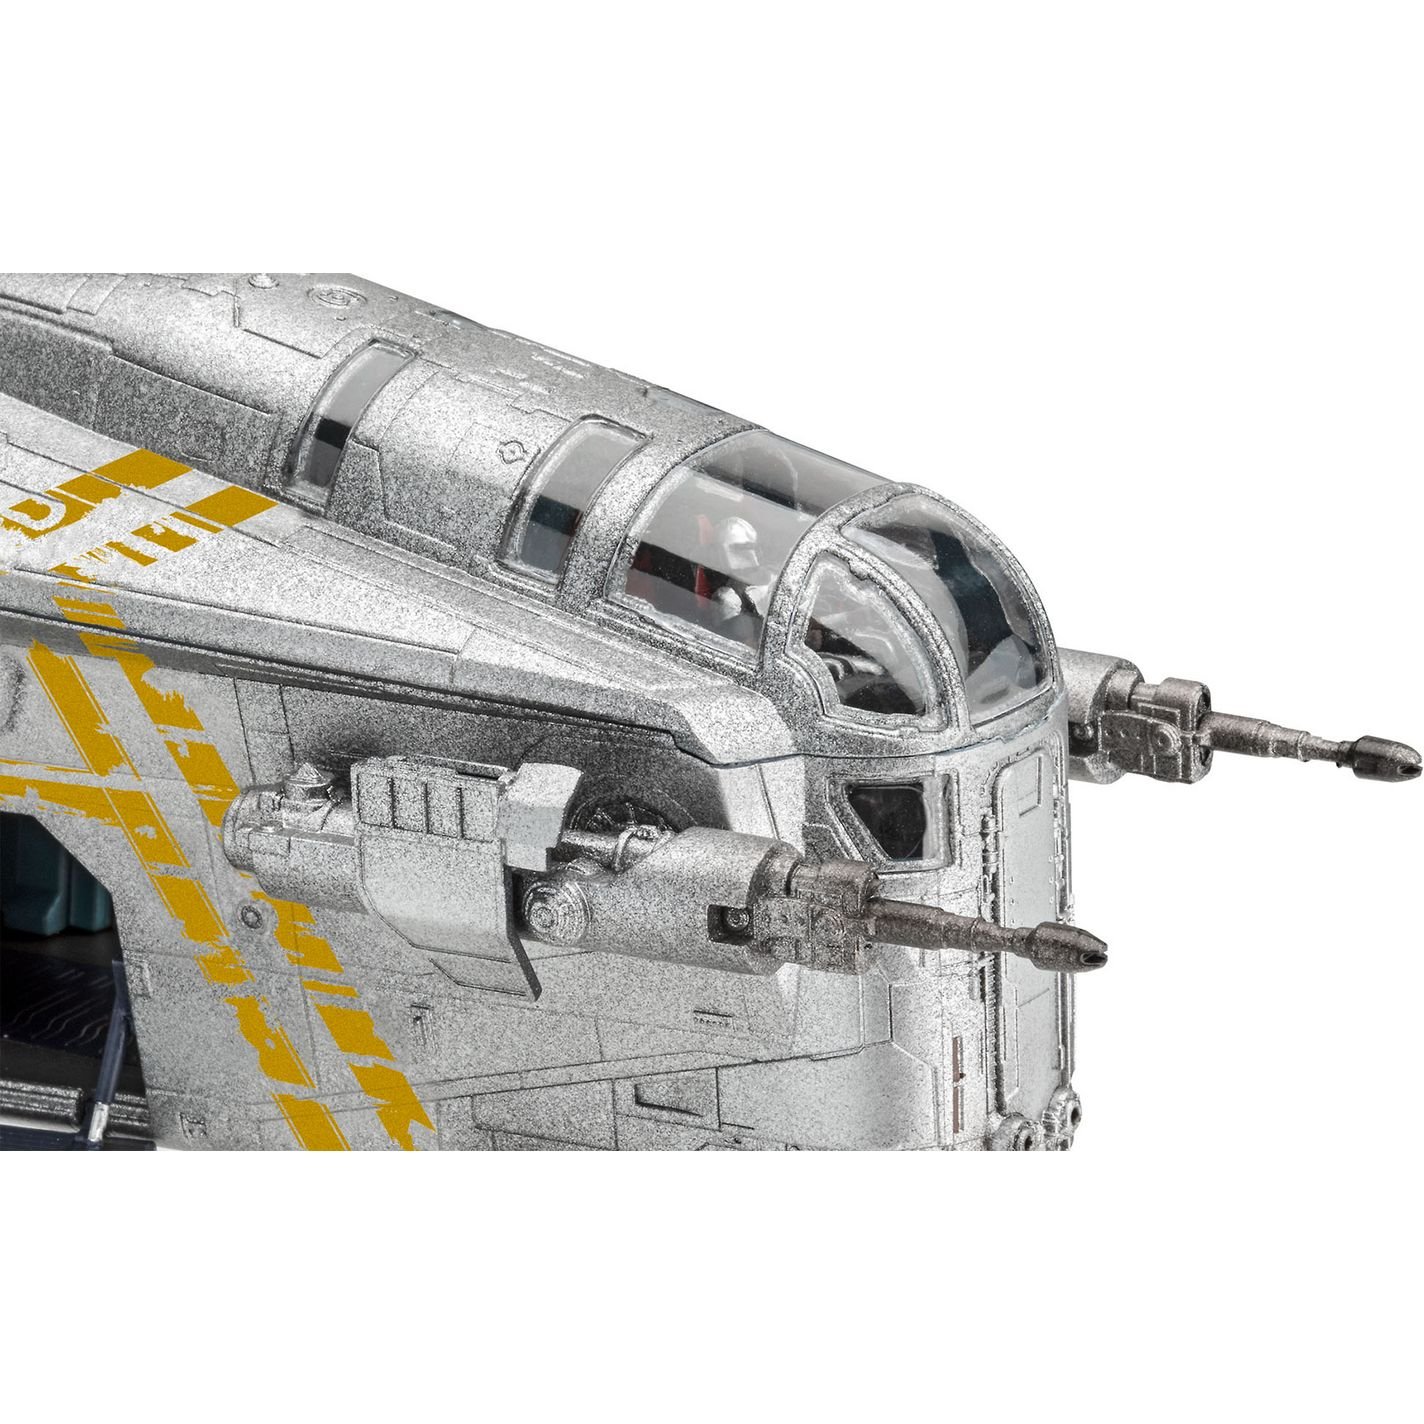 Сборная модель Revell Корабль The Razor Crest из сериала Мандалорец, уровень 3, масштаб 1:72, 101 деталь (RVL-06781) - фото 5